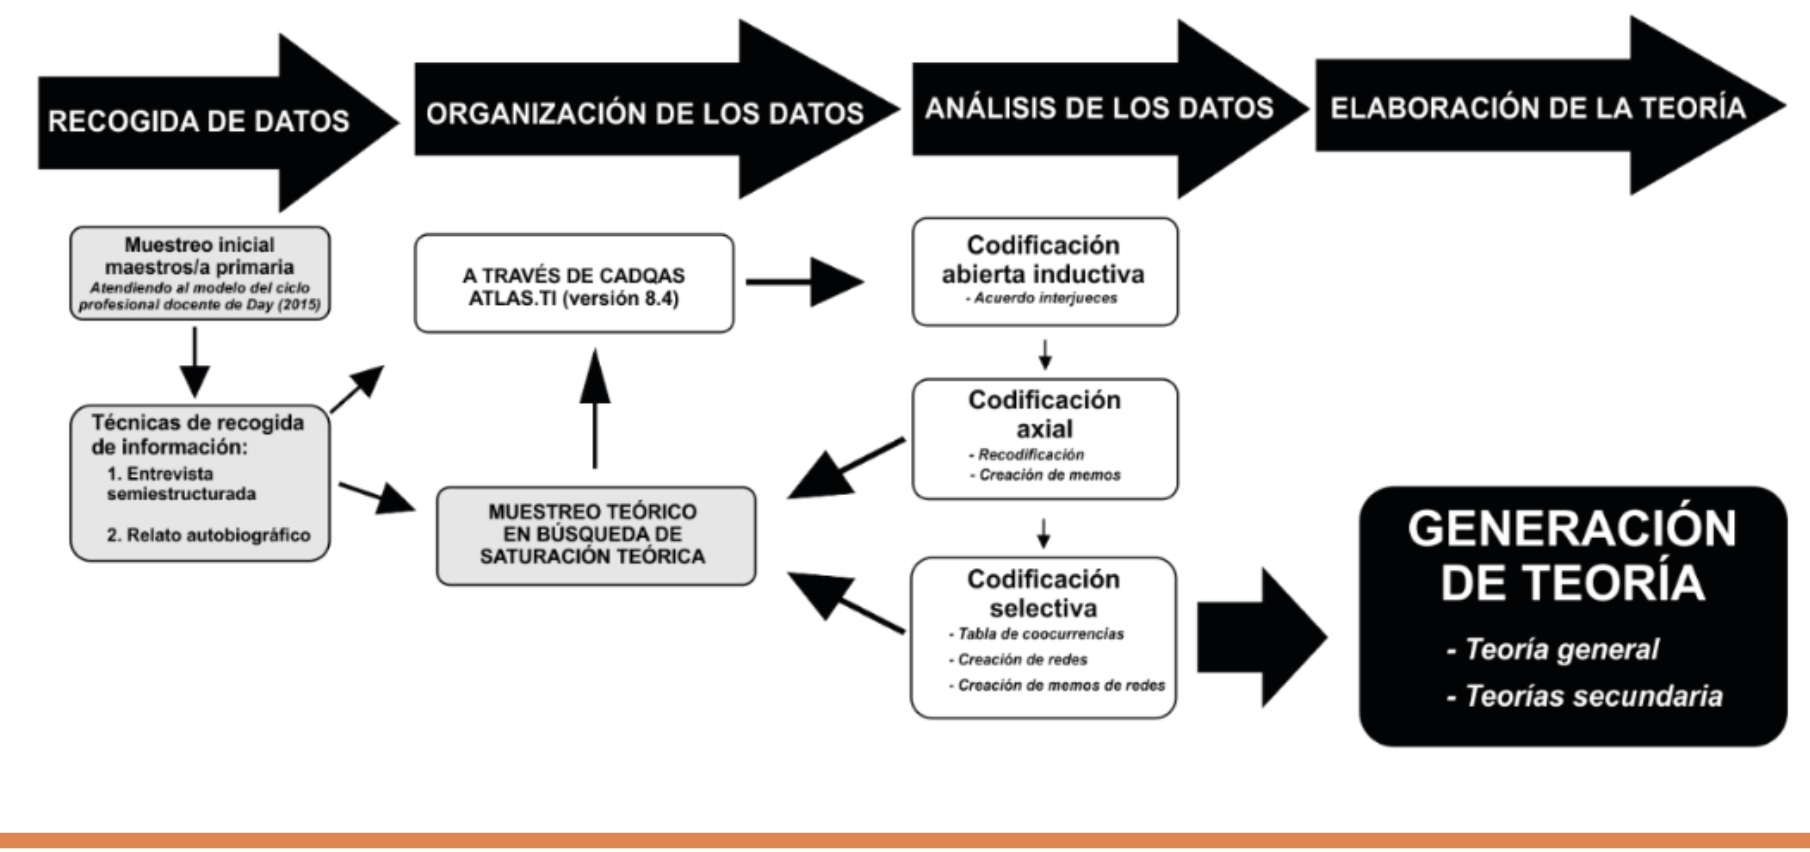 Etapas en el proceso investigador. Fuente: Elaboración propia, basado en Vivar, Arantzamendi, López- Dicastillo y Gordo (2010)